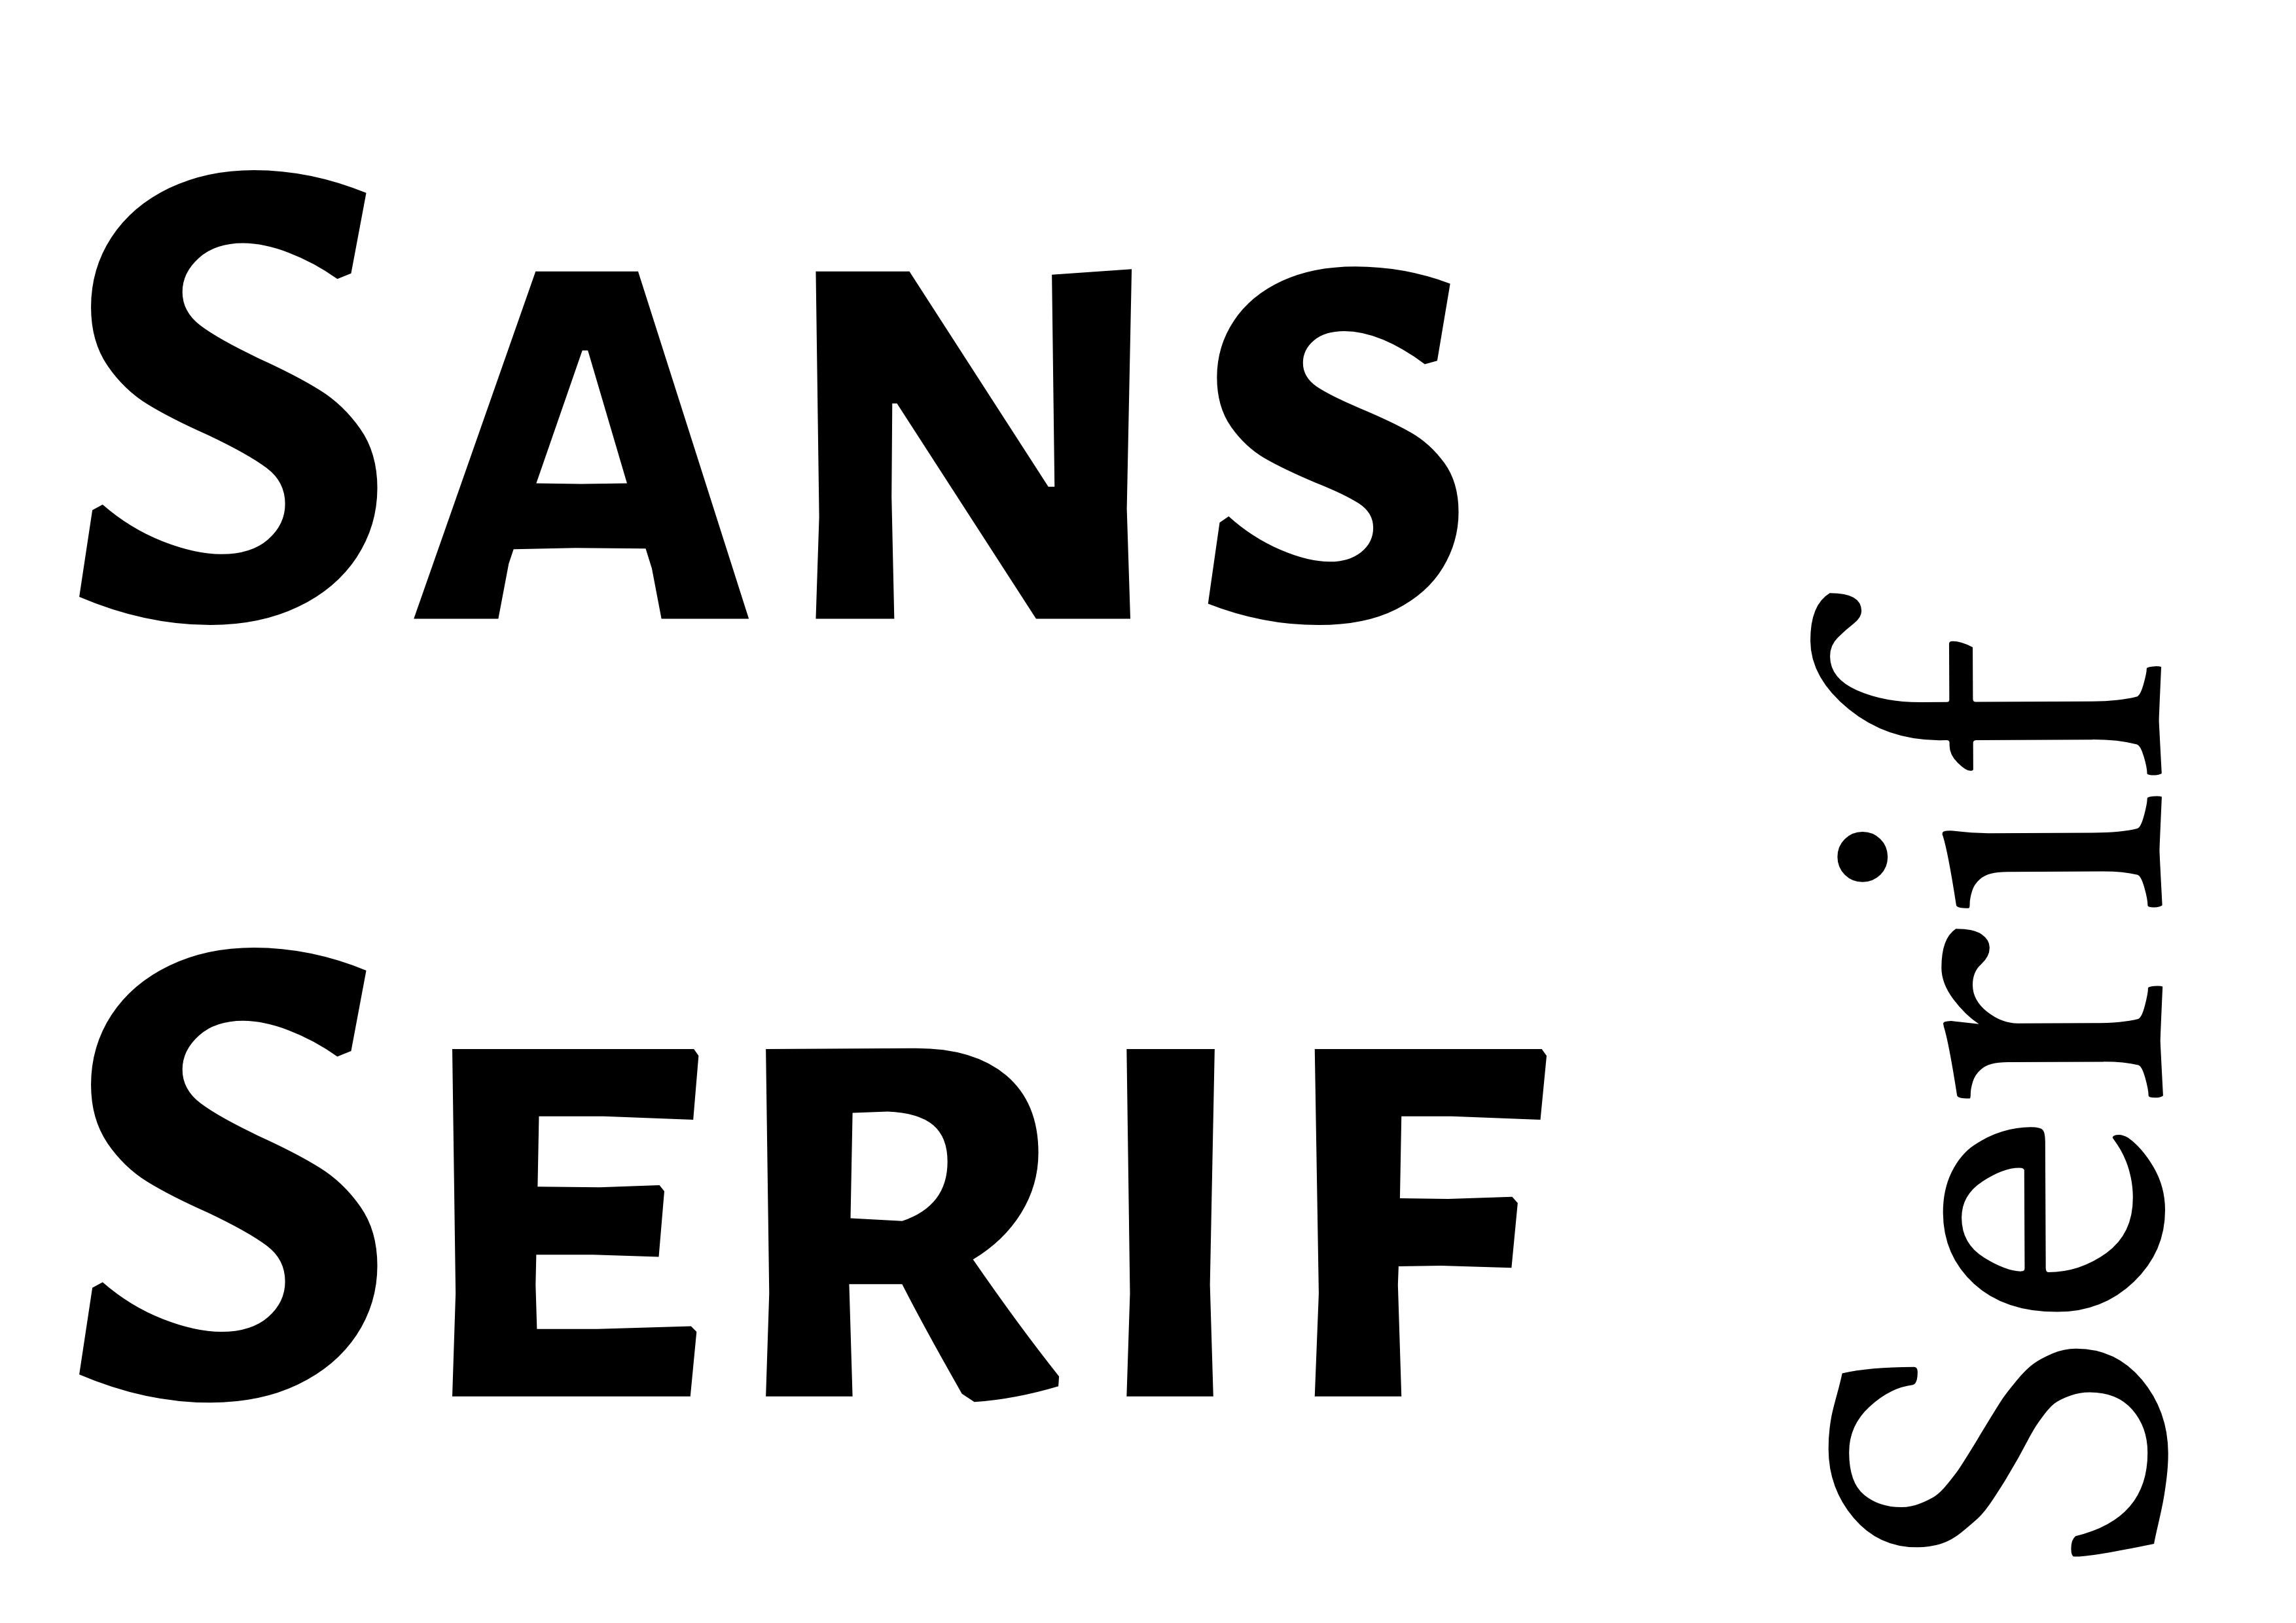 Schriftarten-Kombination - 'Sans Serif' fett in Schwarz links mit 'Serif' kleiner und gedreht in der rechten unteren Ecke - Der vollständige Leitfaden zu Schriftarten: 5 wesentliche Schriftarten-Typen in der Typografie - Bild